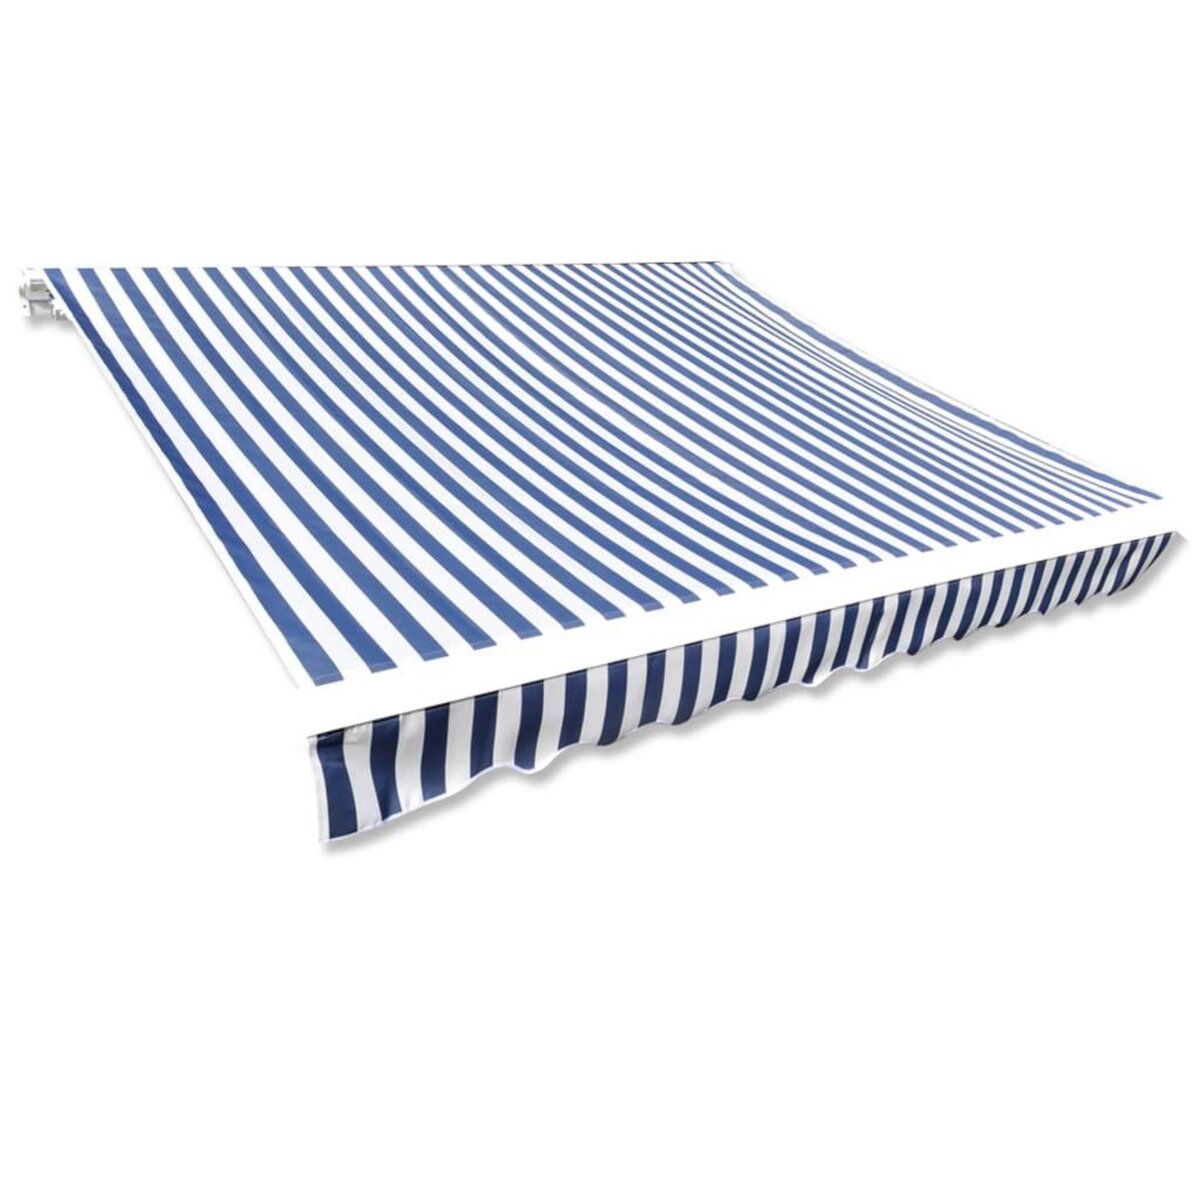 VIDAXL Toit d'auvent Toile Bleu et blanc 6x3 m (Cadre non inclus)